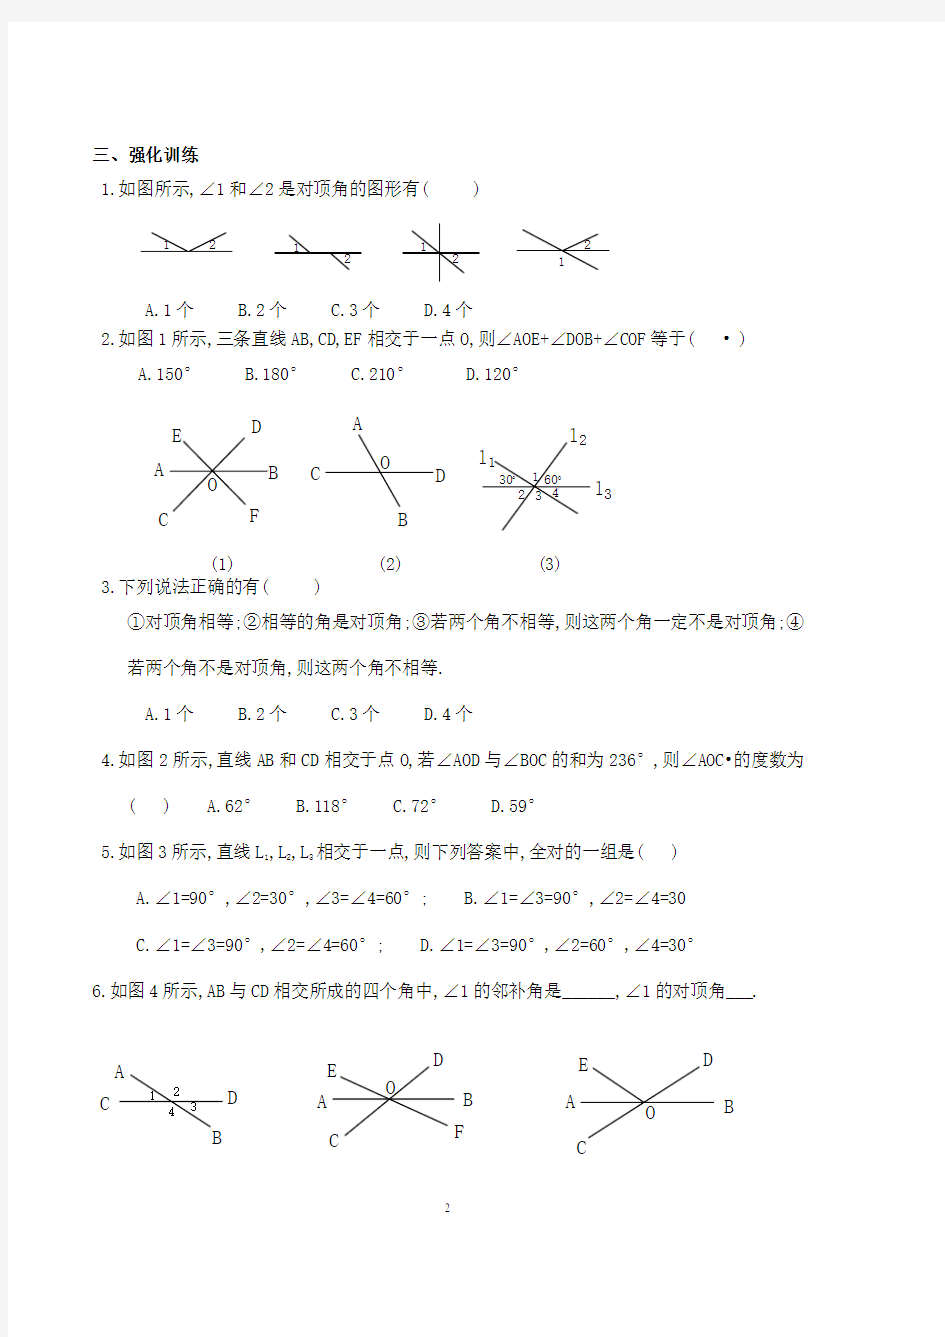 最新人教版初一数学下册全册复习资料(2020年整理).pdf